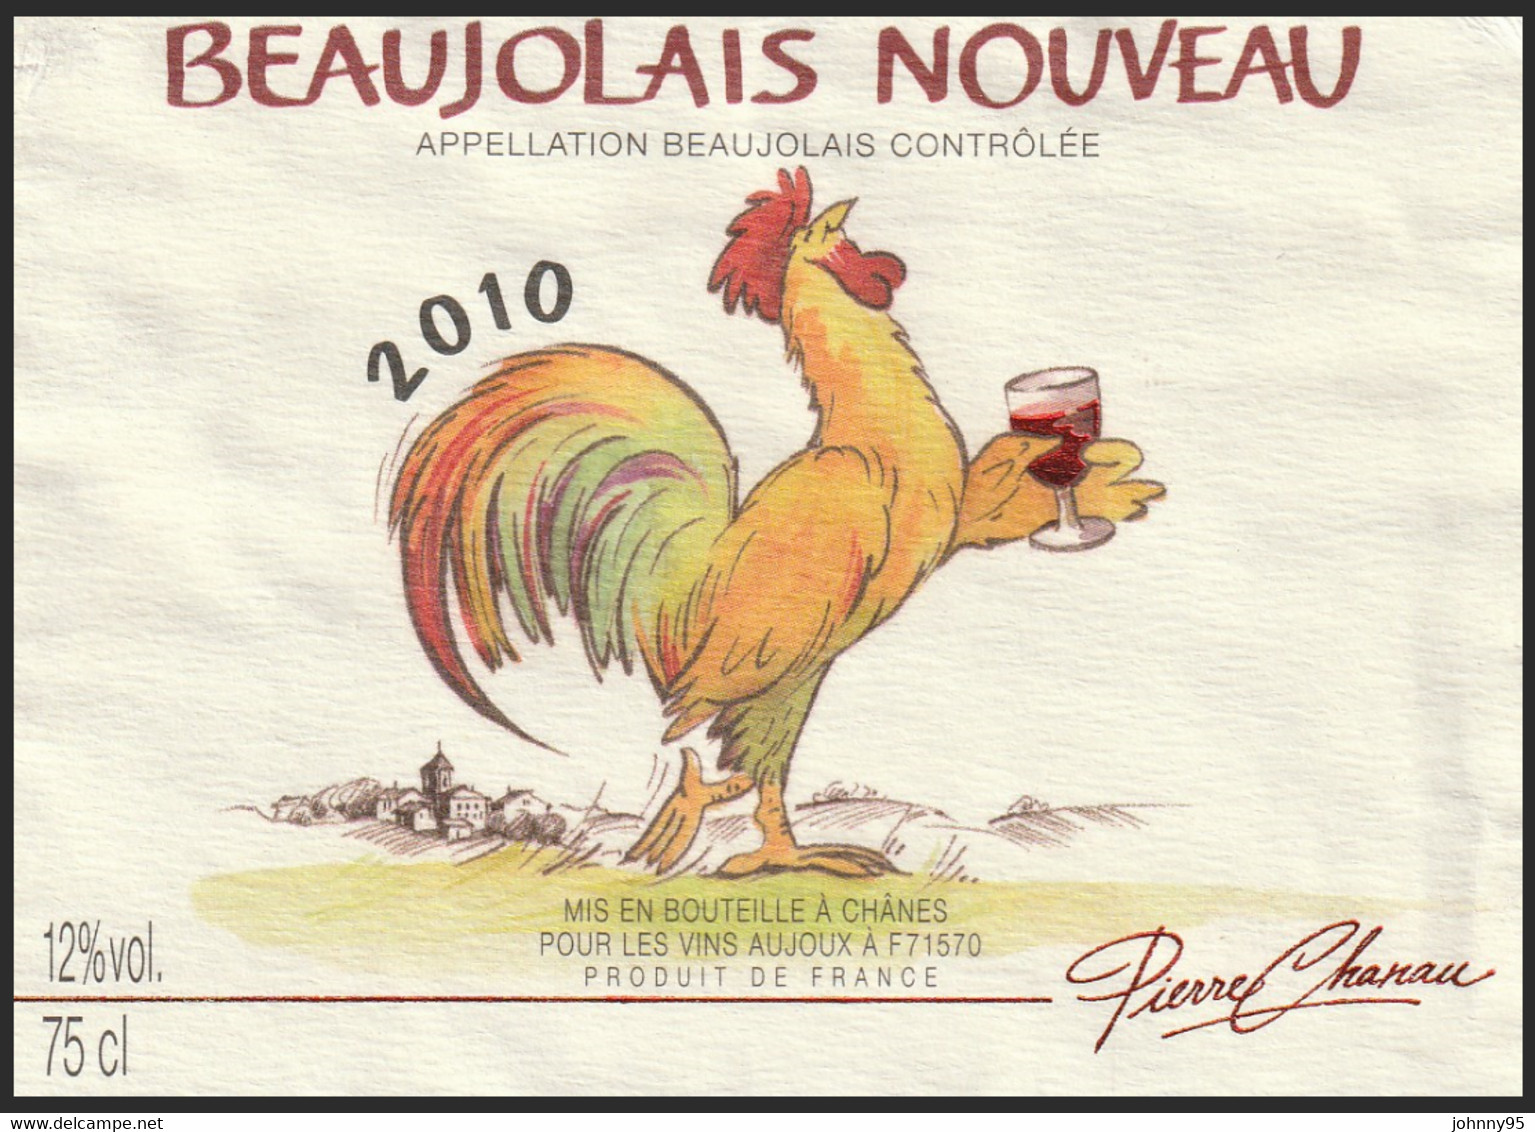 Coq Sur étiquette De Vin - Beaujolais Nouveau 2010 Pierre Chanau - Vins Aujoux : Chânes Saône Et Loire - Hanen